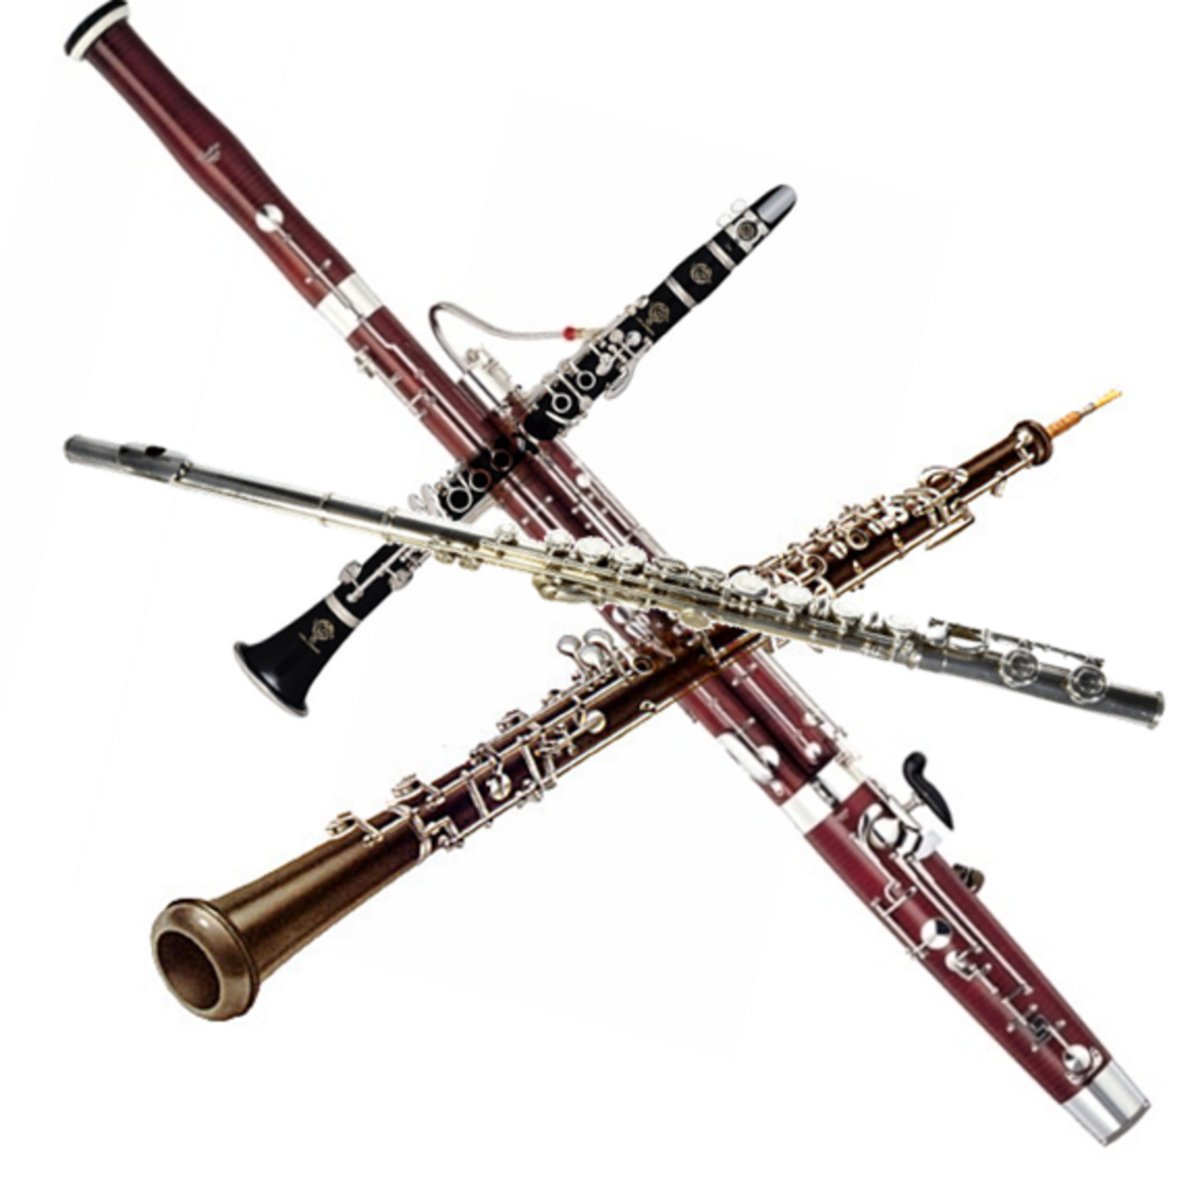 Гобой труба кларнет. Деревянные духовые флейта гобой кларнет Фагот. Флейта гобой кларнет Фагот. Деревянные духовые инструменты флейта кларнет гобой Фагот. Музыкальные инструменты флейта гобой кларнет Фагот.